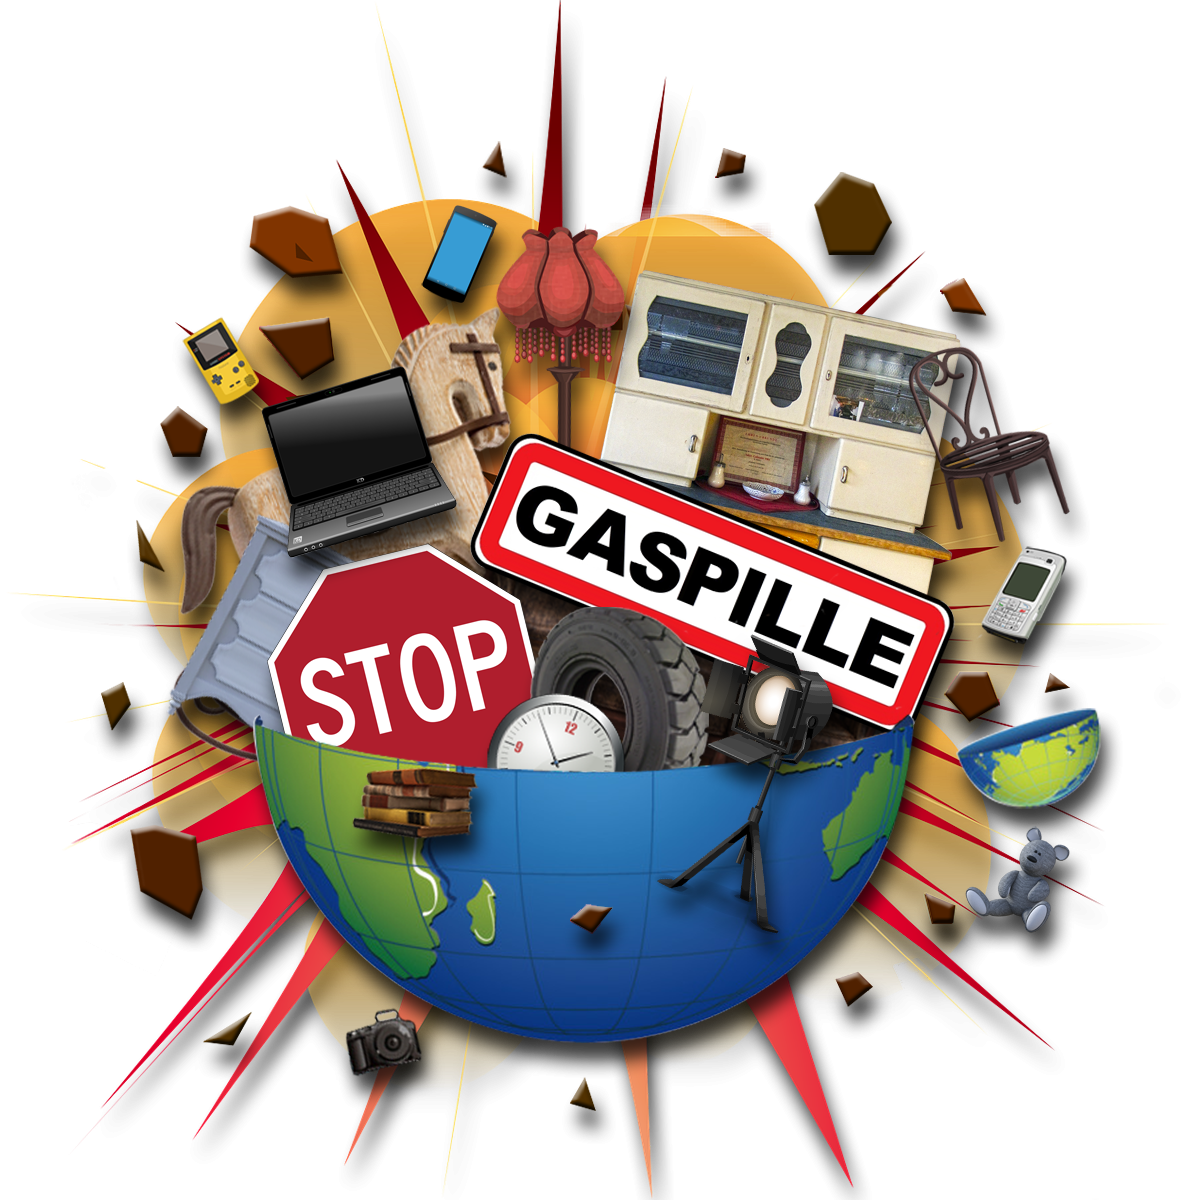 Logo de Stop gaspille 42